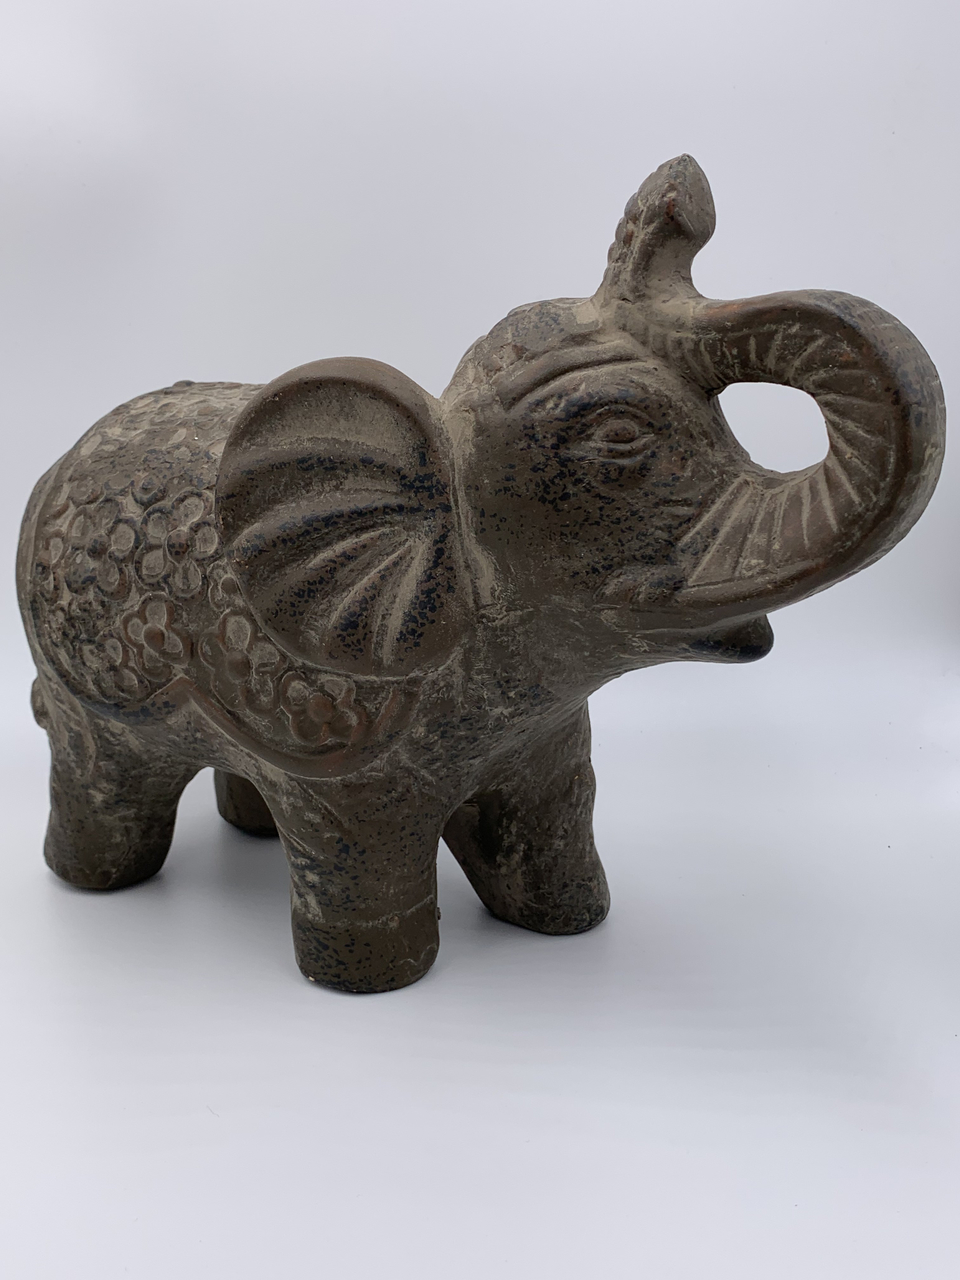 Decoratie beeld olifant met slurf omhoog bruin zwart 26x10x20cm| 65457 | Home Sweet Home | Stoer & Sober Woonstijl